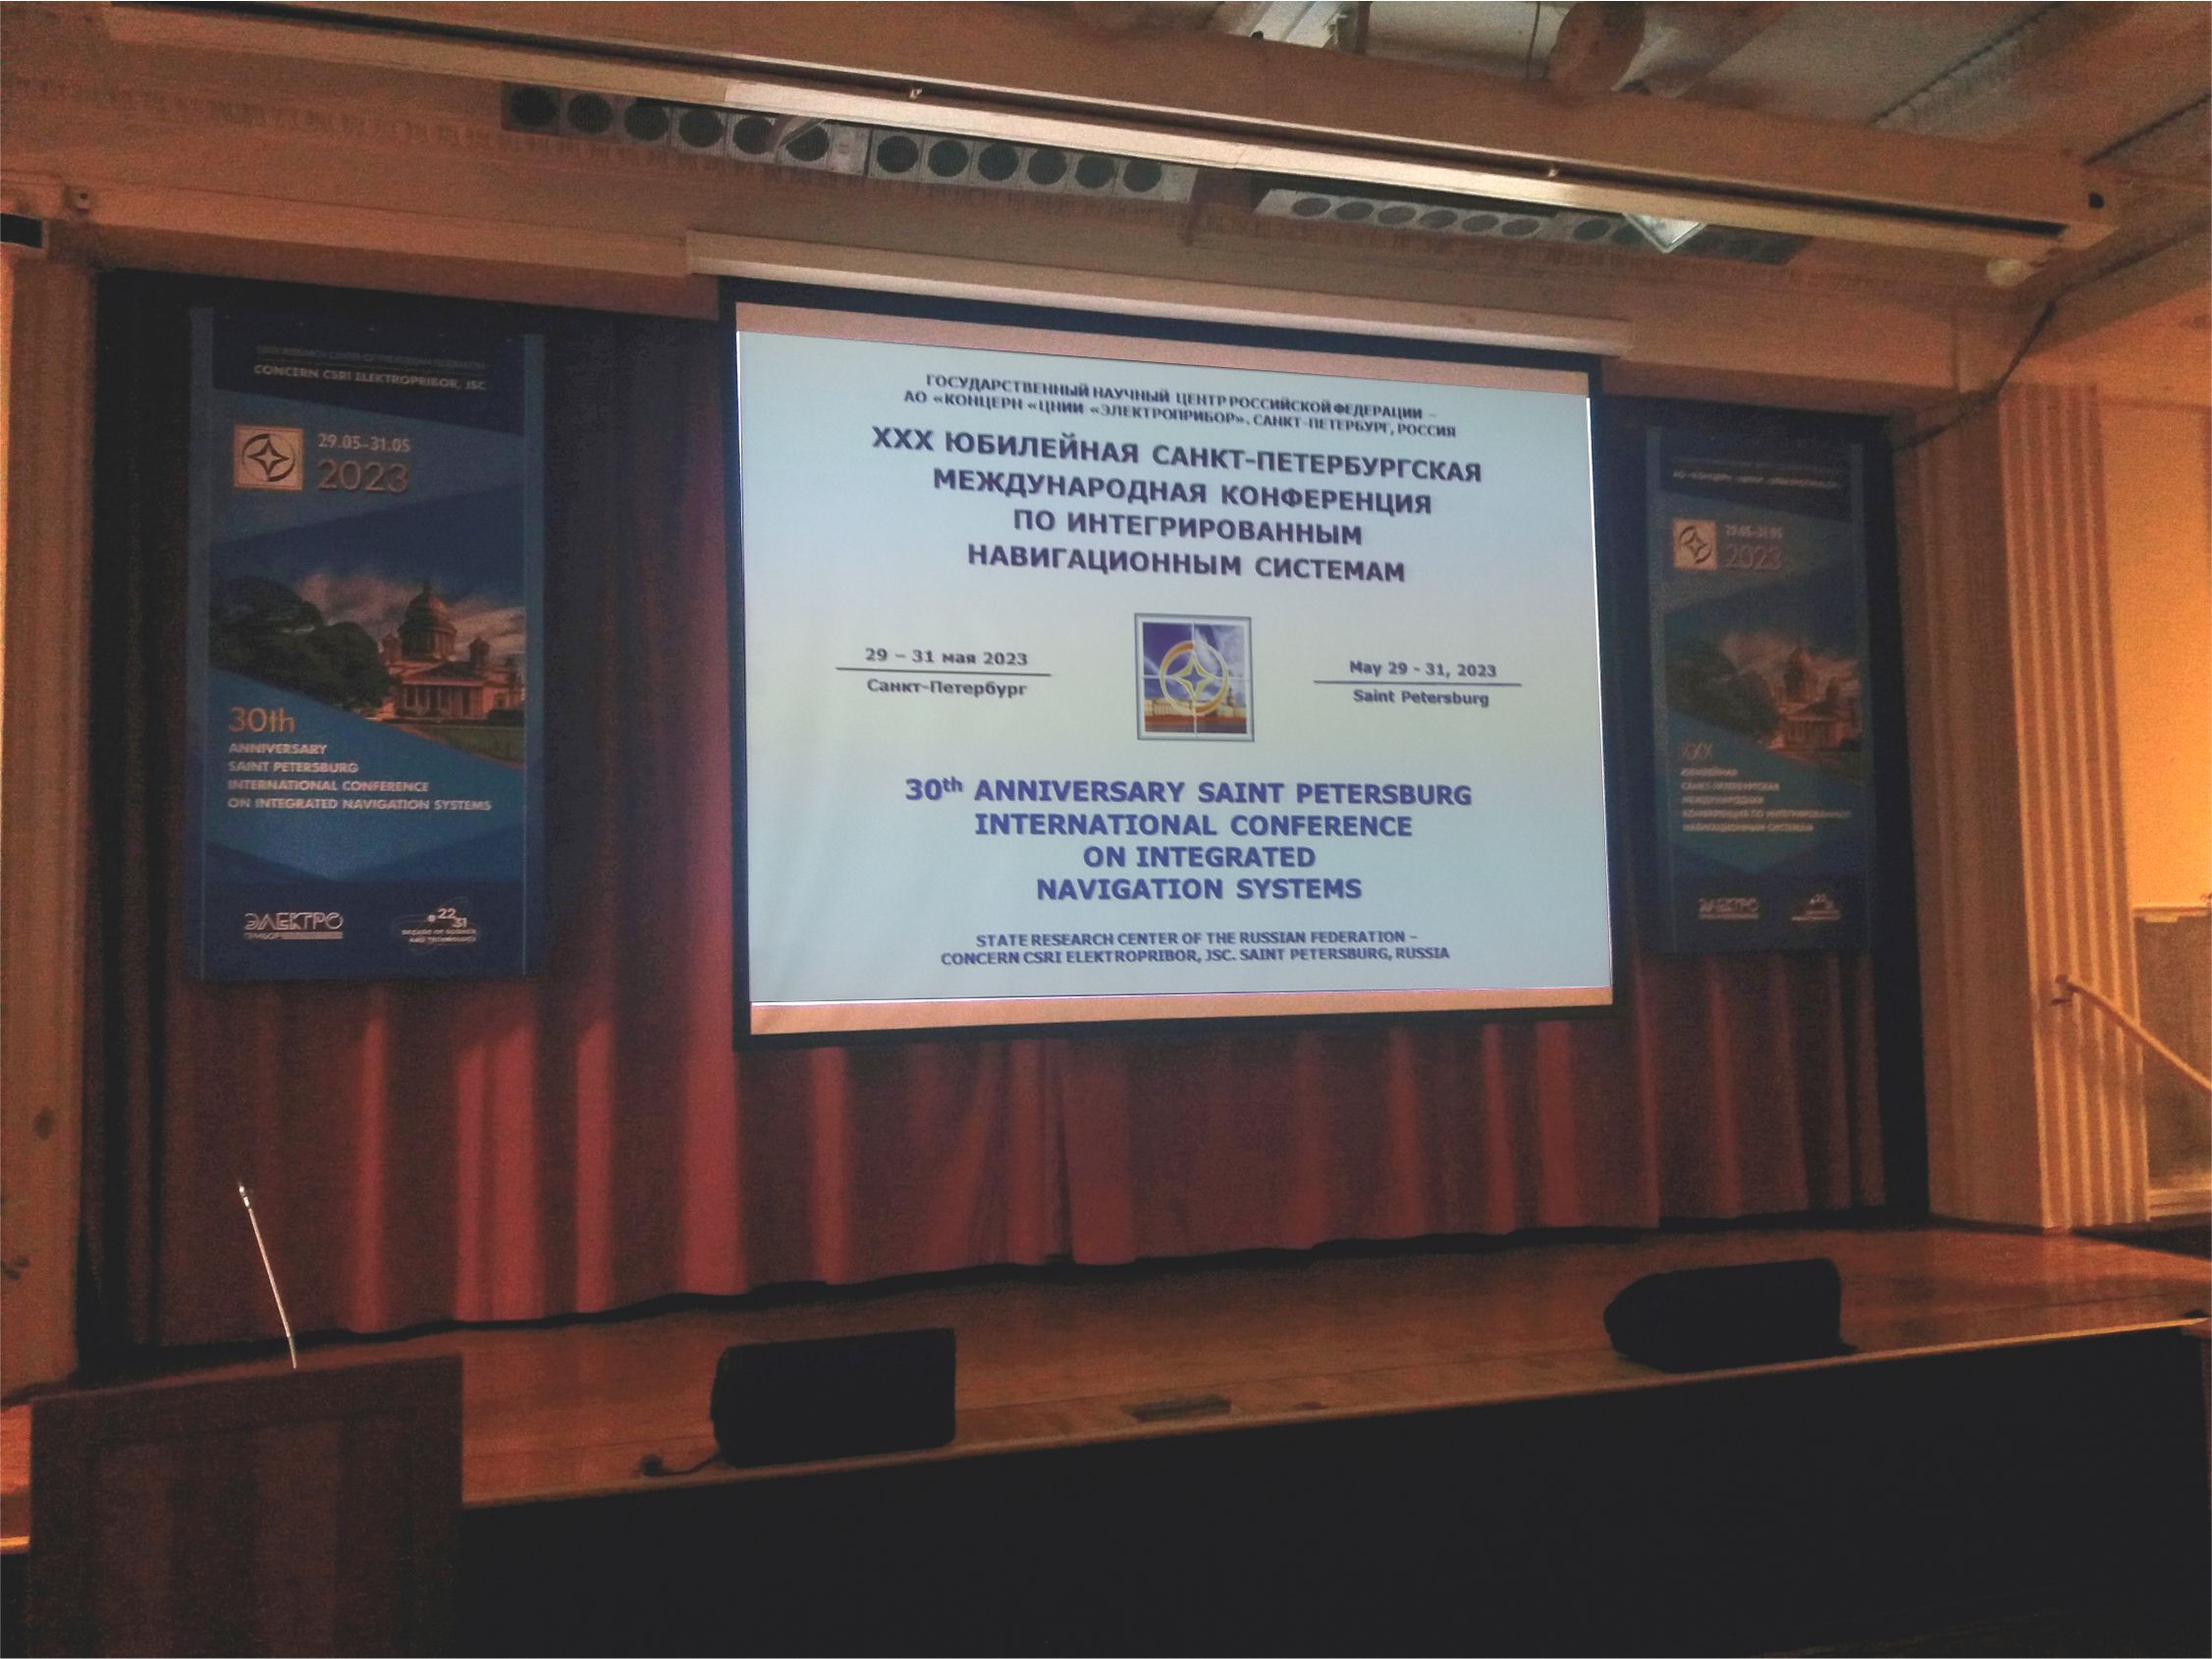 ХХХ Юбилейная Санкт-Петербургская международная конференция по интегрированным навигационным системам